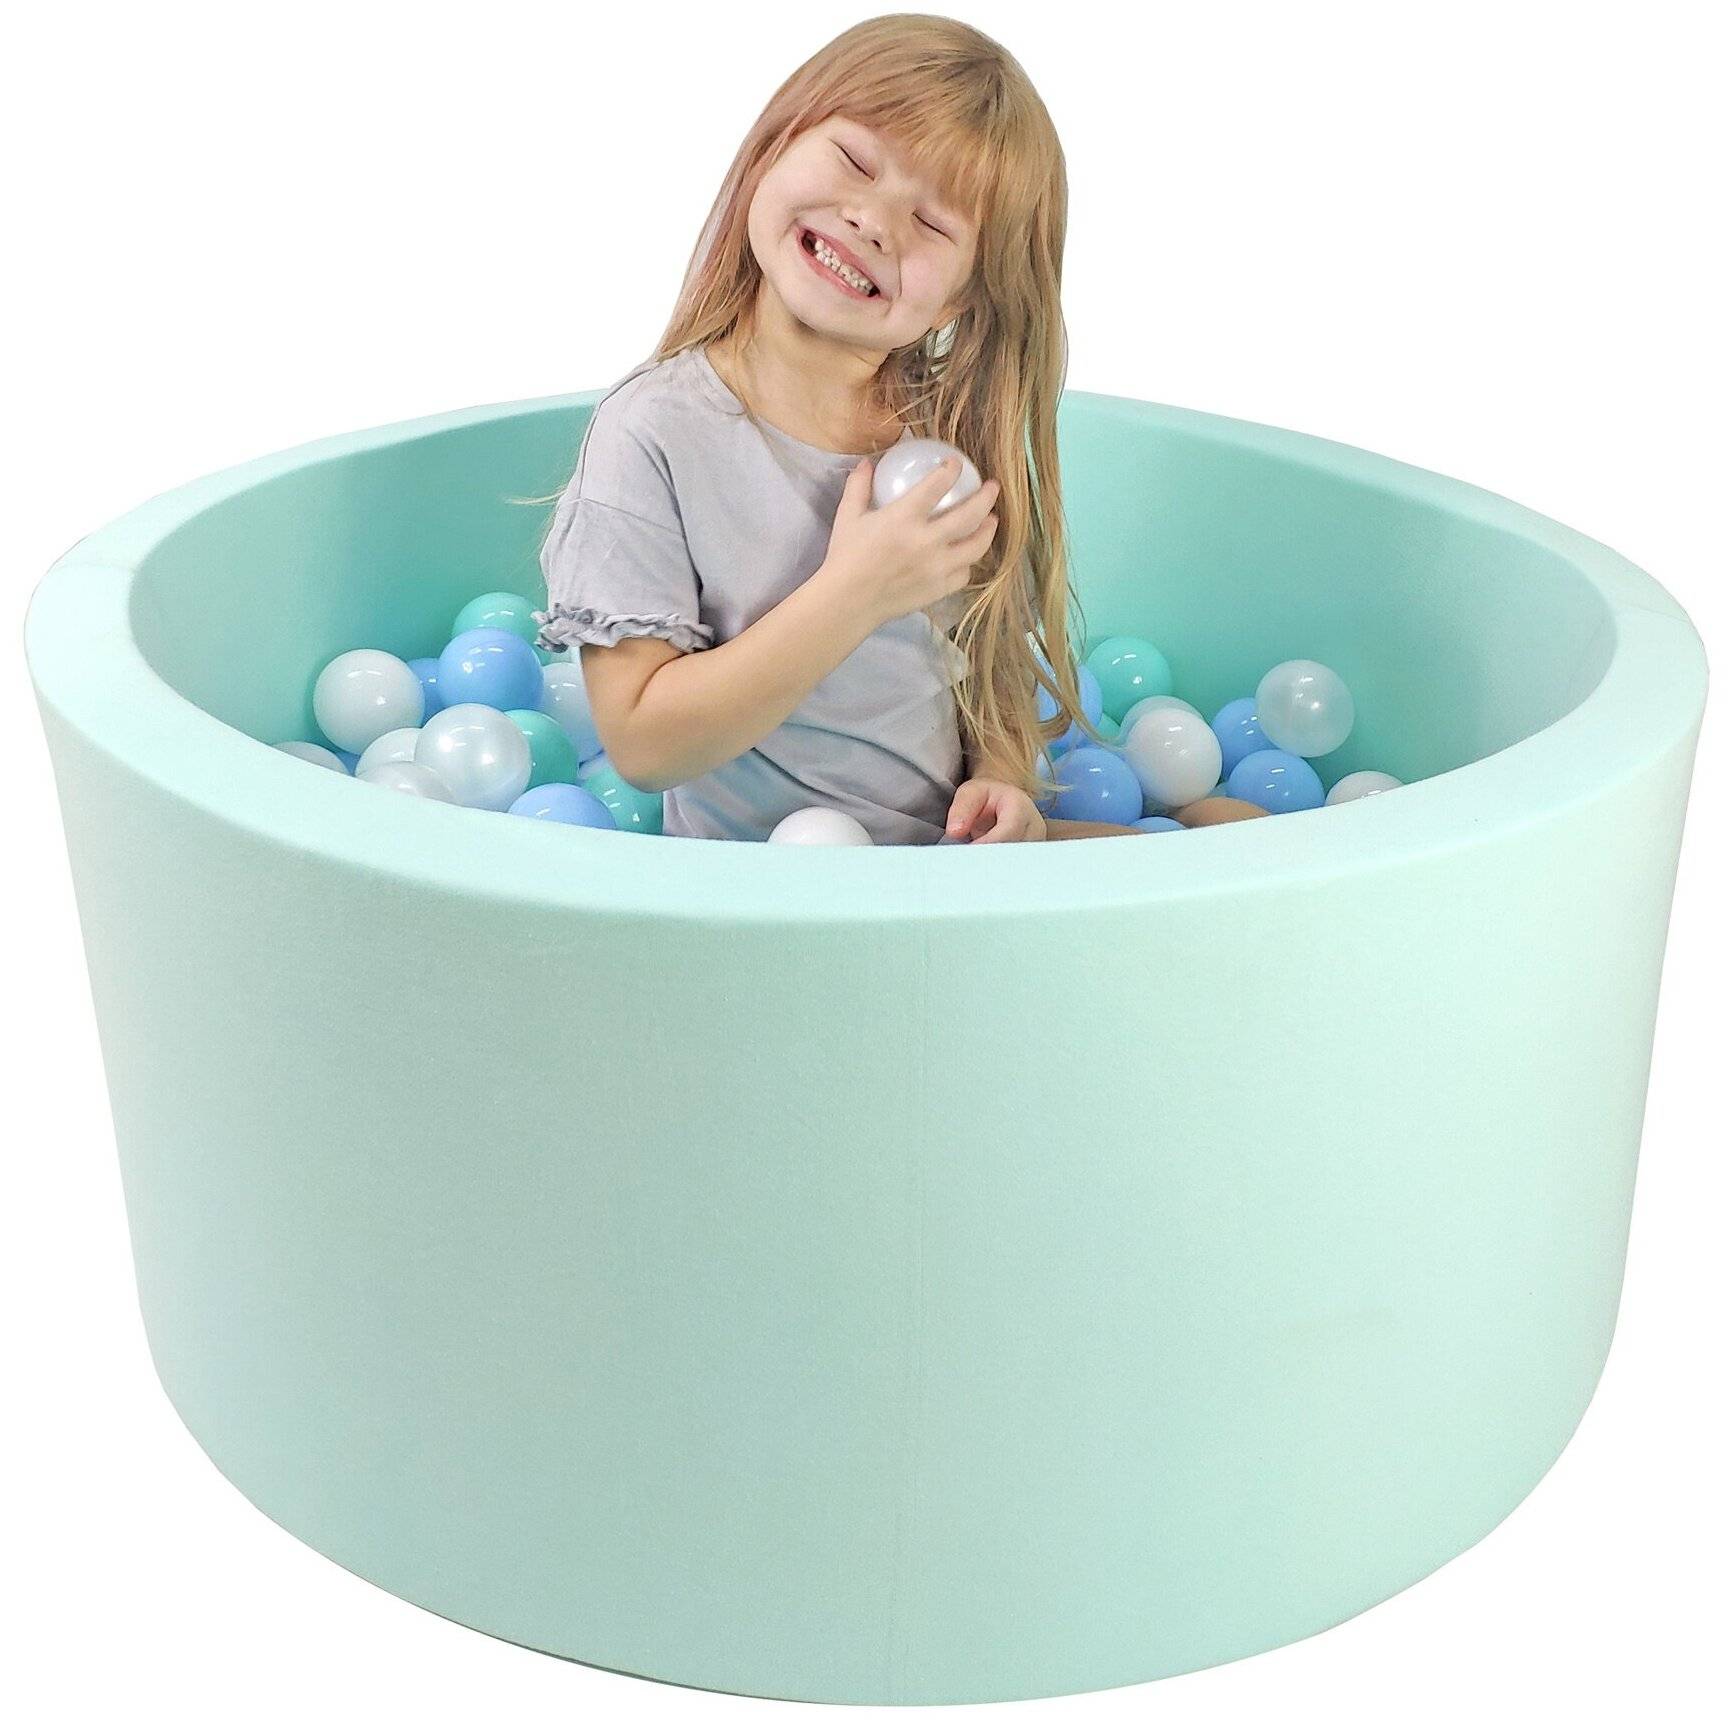 Шарики для детского сухого бассейна, видео / сухой бассейн с шариками для детей, фото